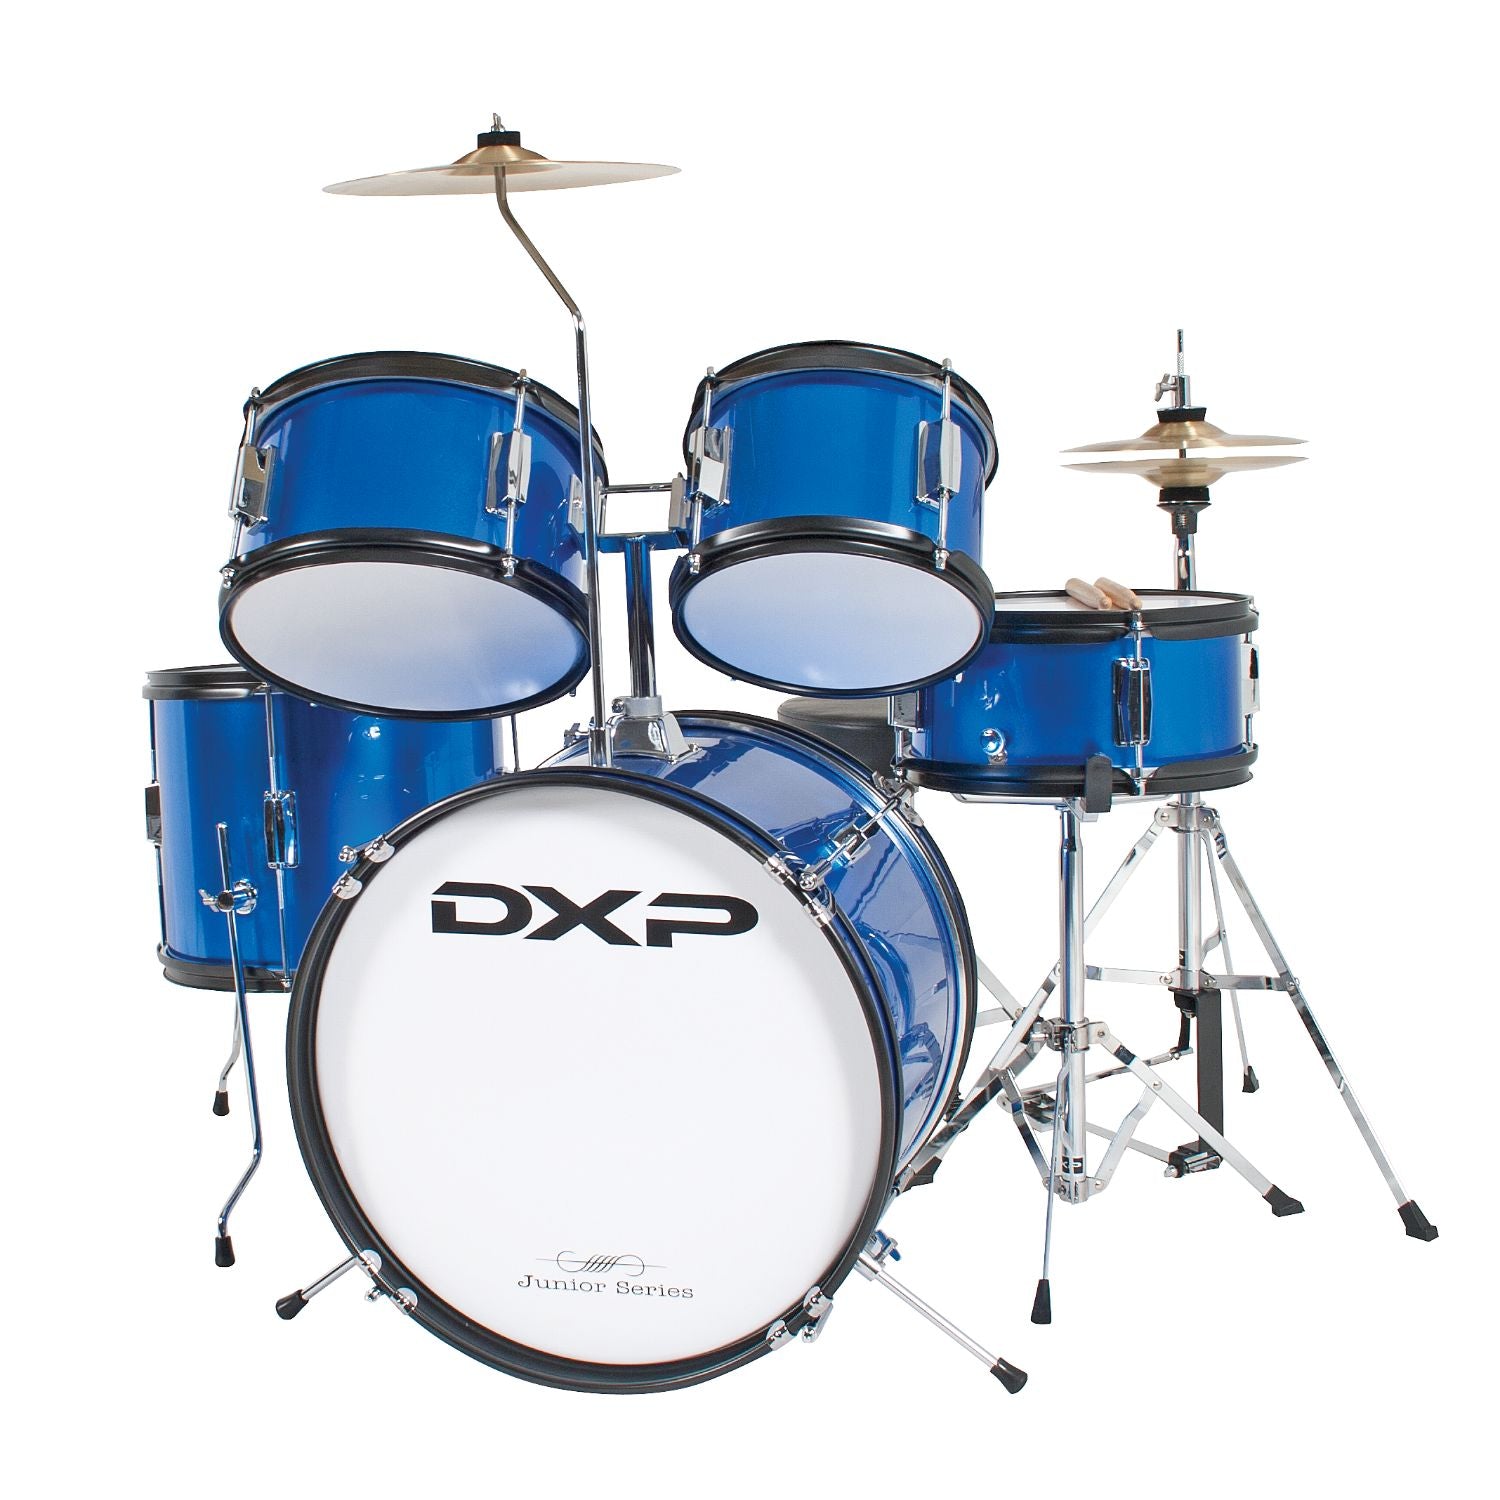 DXP 5-Piece Junior Drum Kit